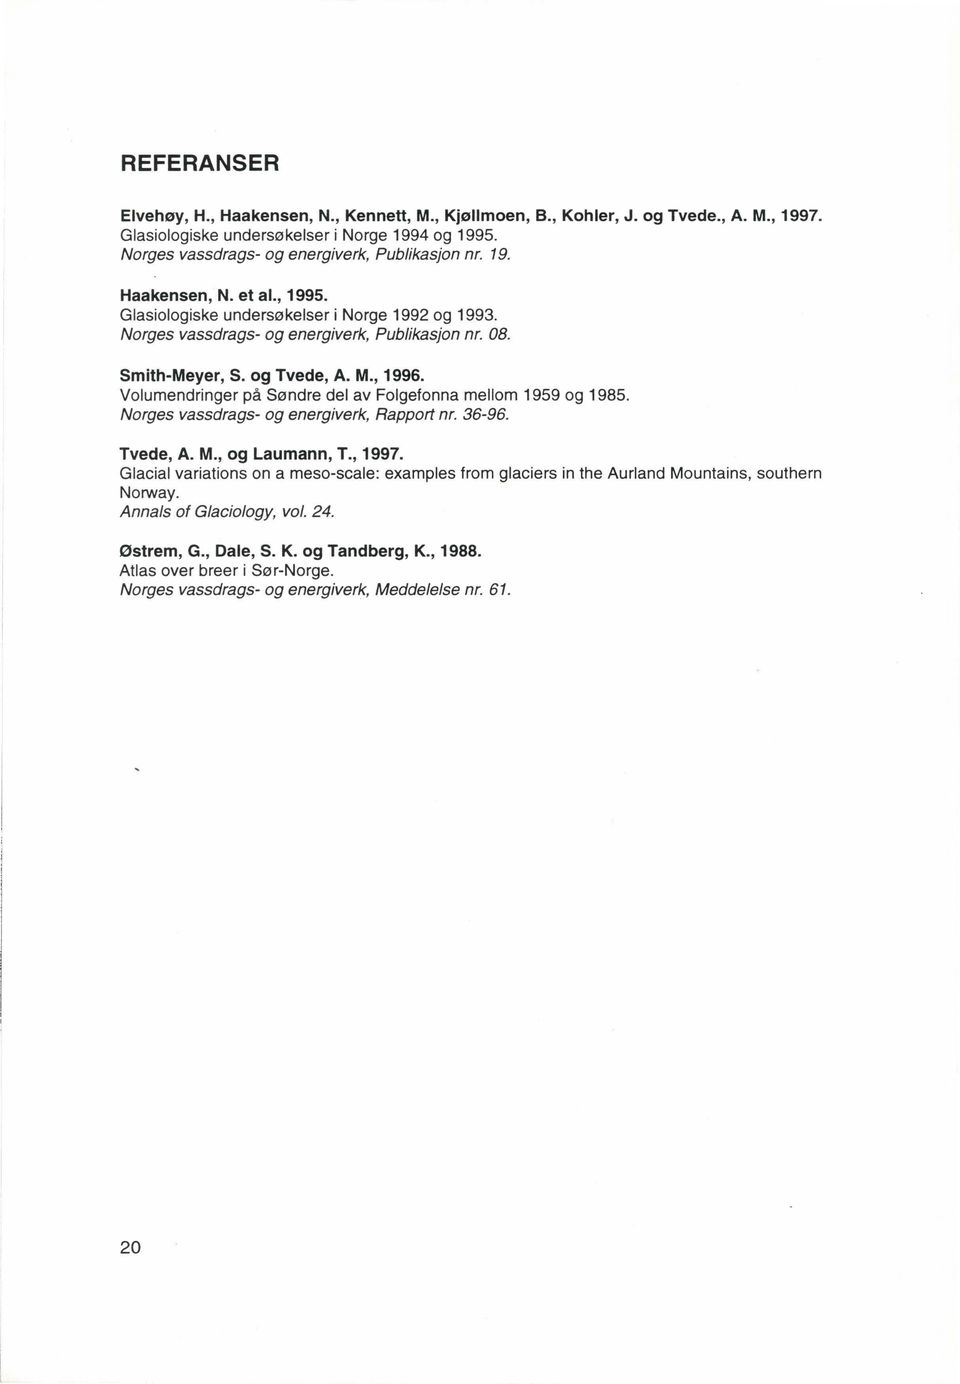 Smith-Meyer, S. og Tvede, A. M., 1996. Volumendringer på Søndre del av Folgefonna mellom 1959 og 1985. Norges vassdrags- og energiverk, Rapport nr. 36-96. Tvede, A. M., og Laumann, T., 1997.